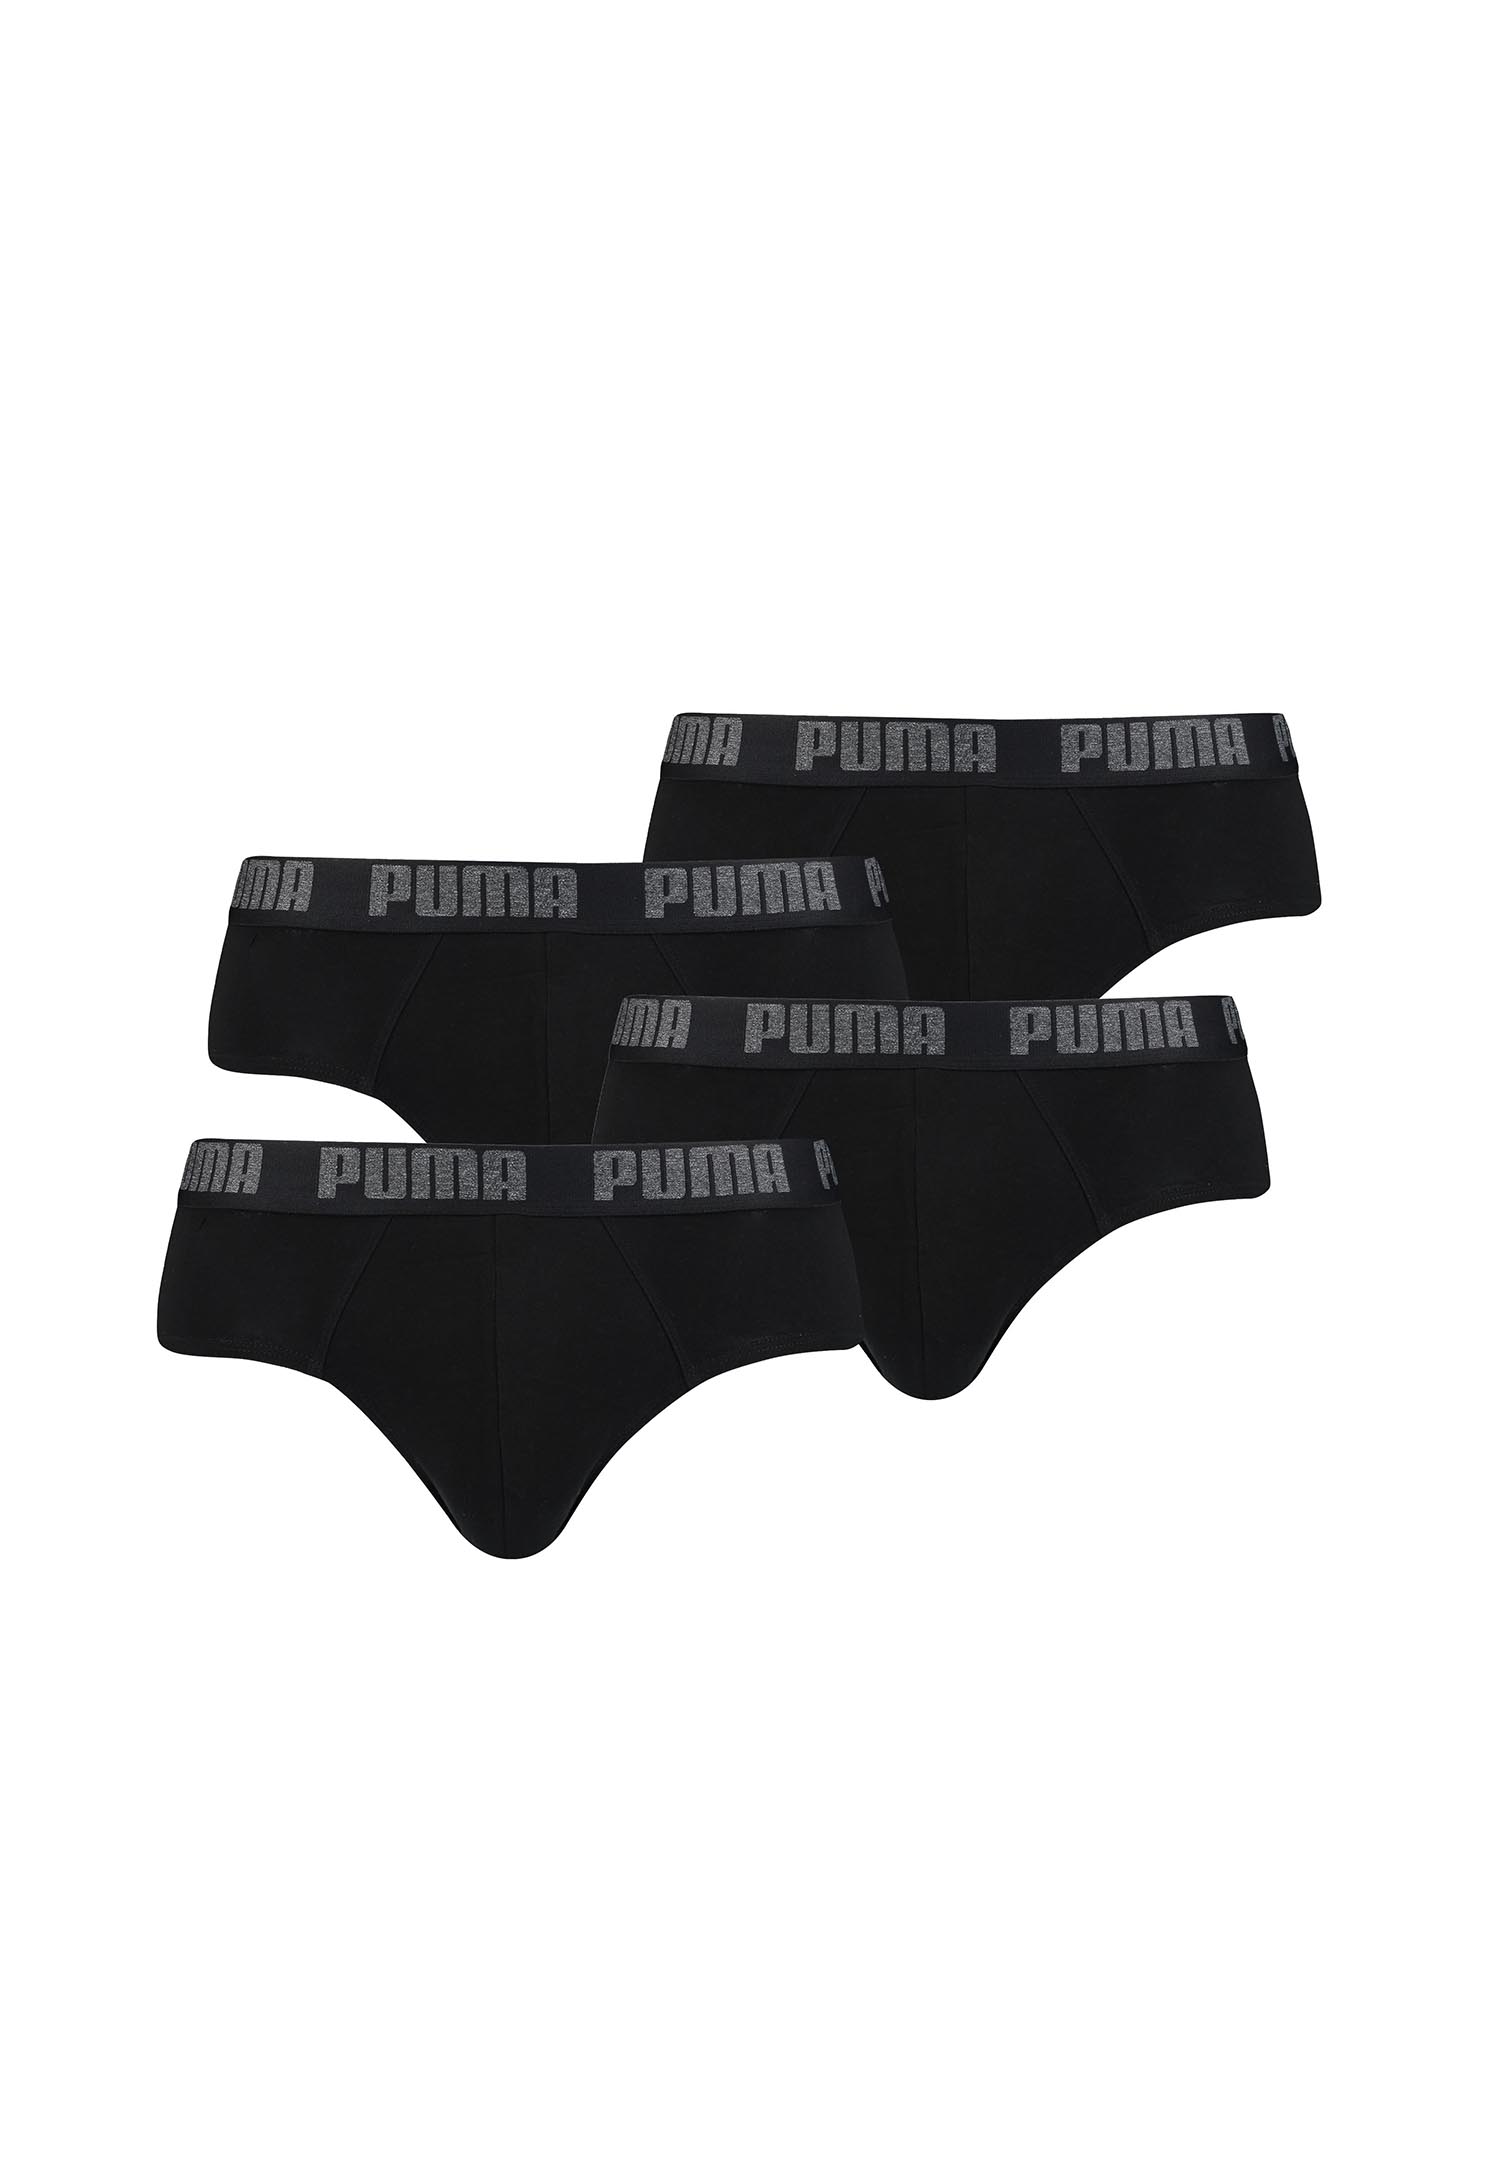 Puma Basic Brief Men Herren Unterhose Pant Unterwäsche 4er Pack